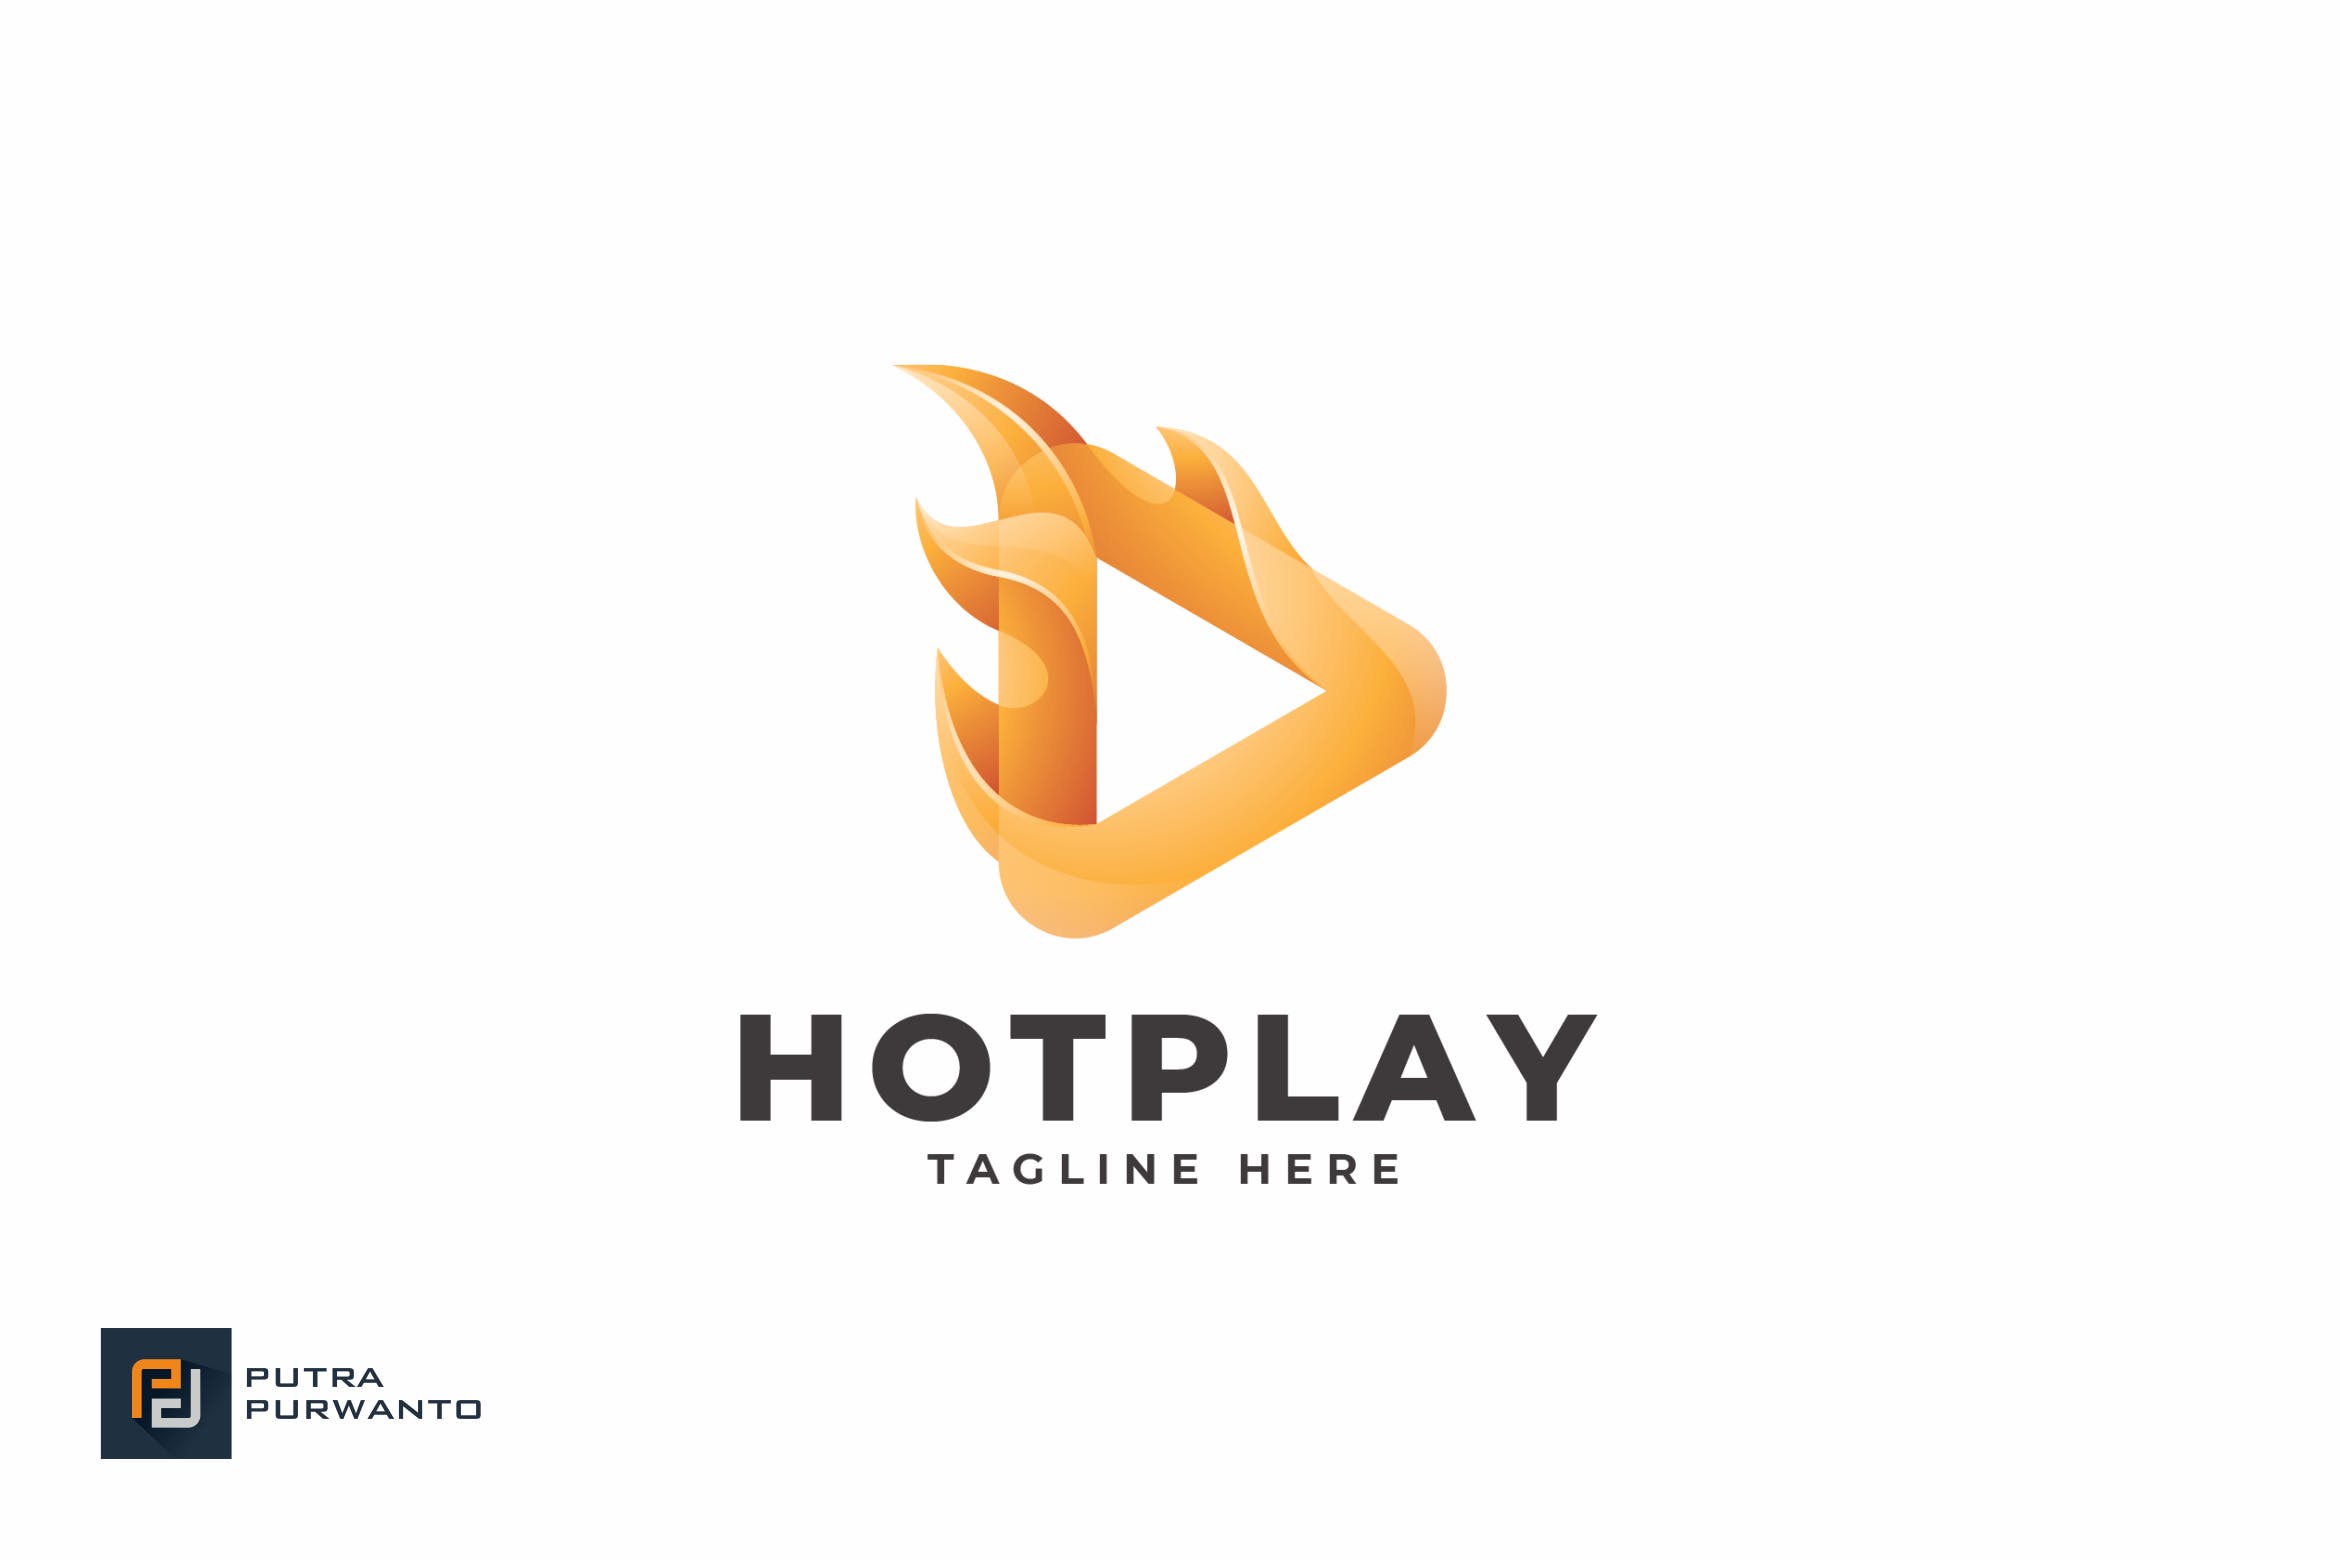 播放器/多媒体品牌Logo设计第一素材精选模板 Hot Play – Logo Template插图